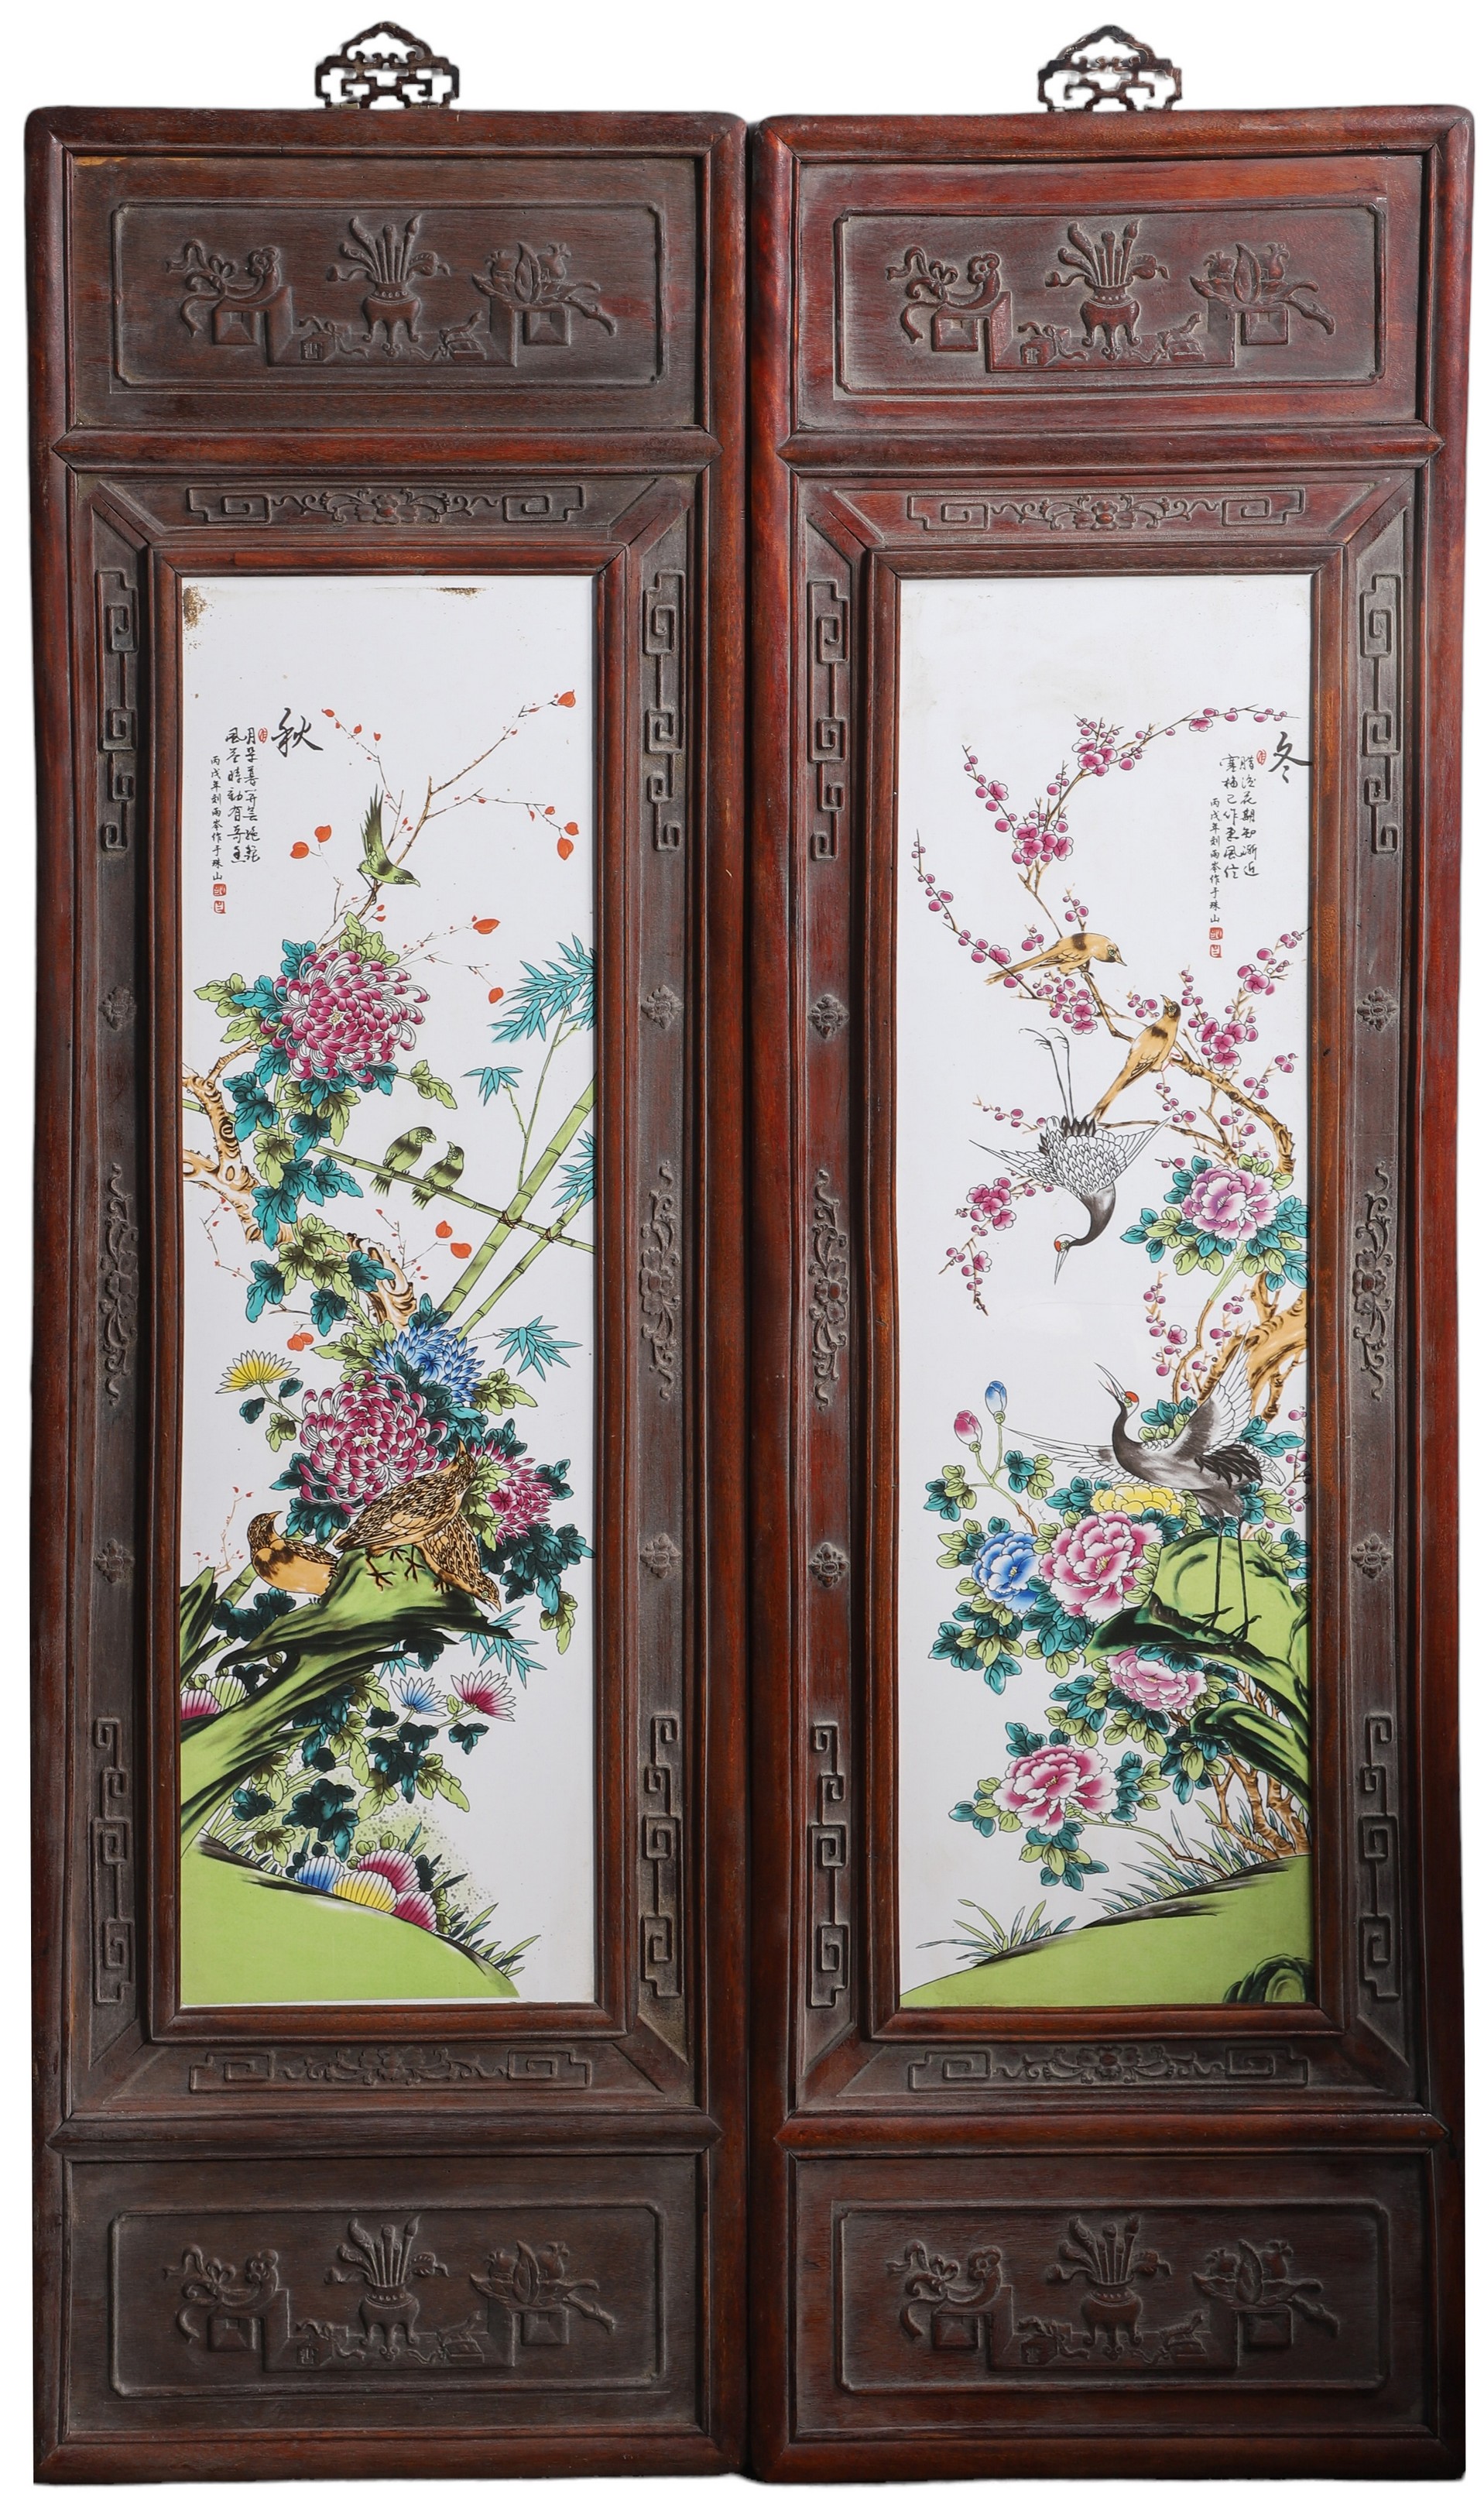 Pair of framed Chinese porcelain 2e1433